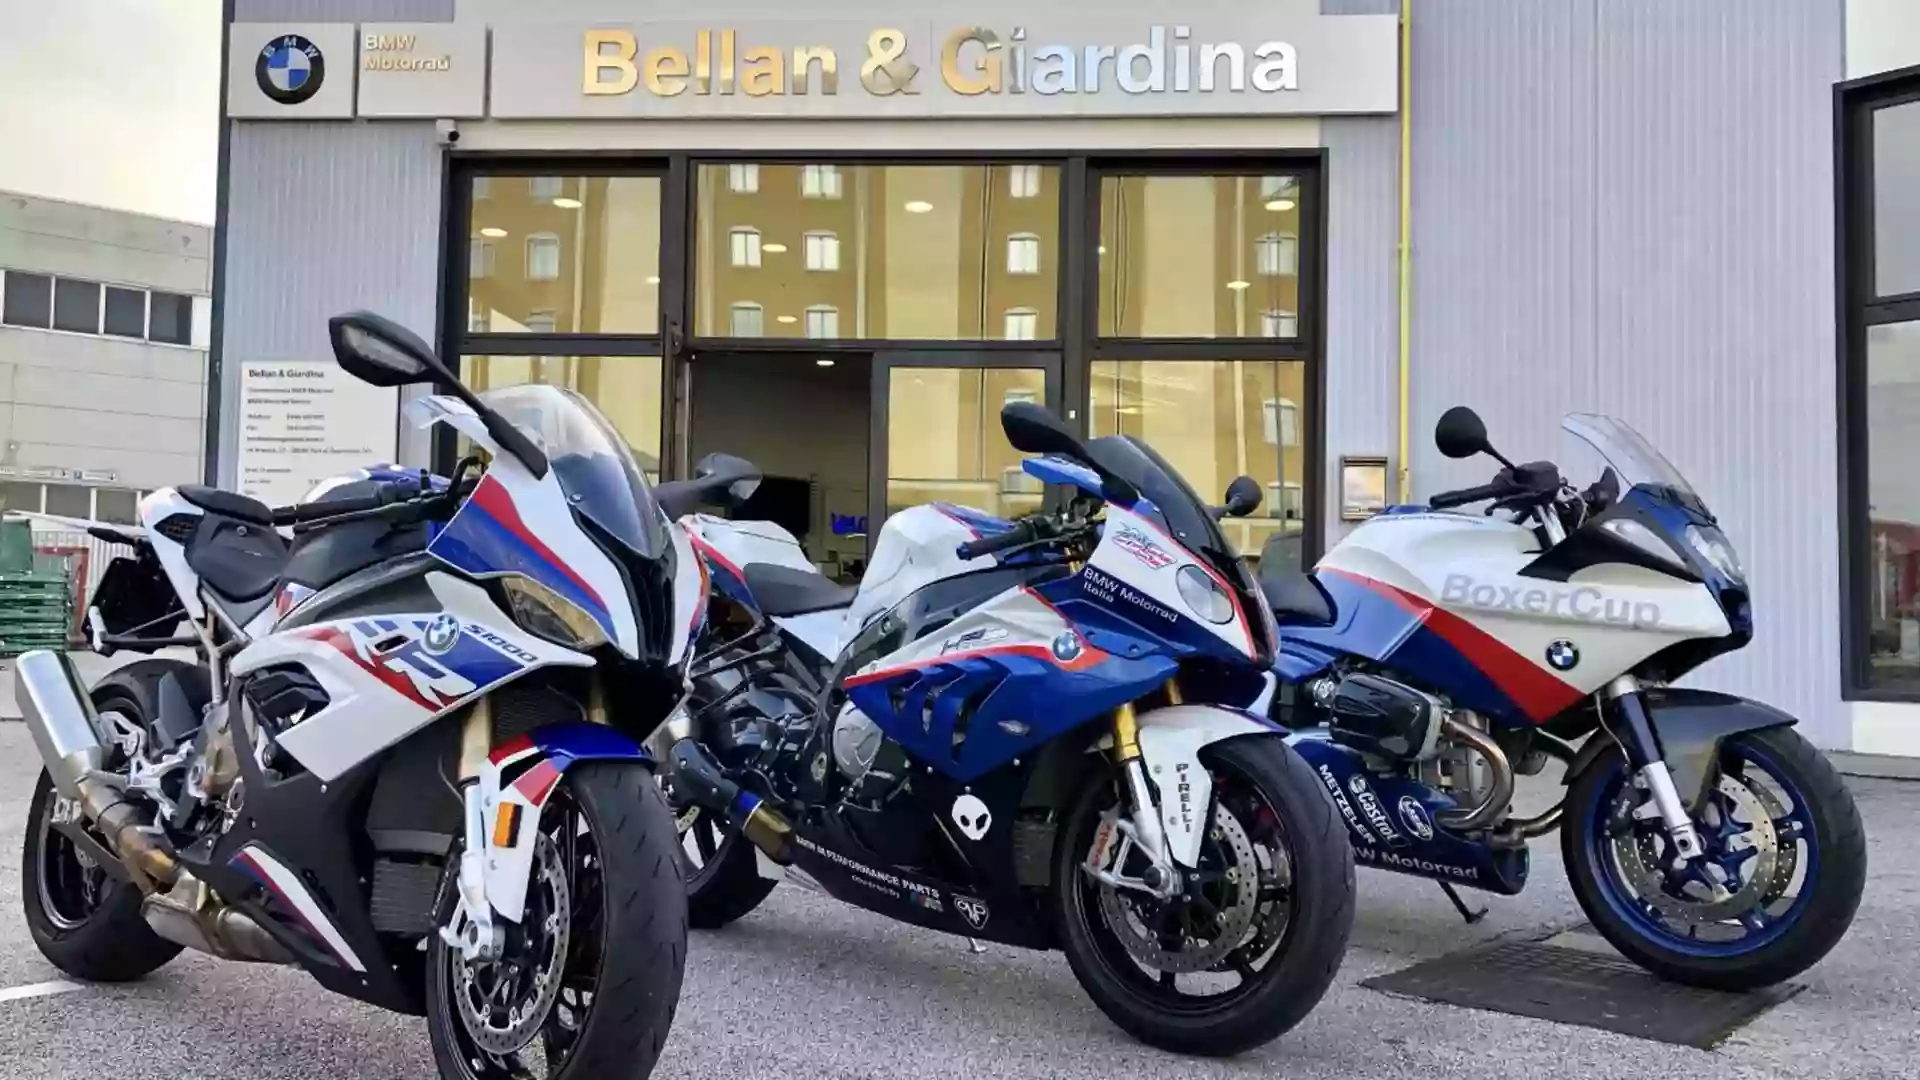 Bellan & Giardina BMW